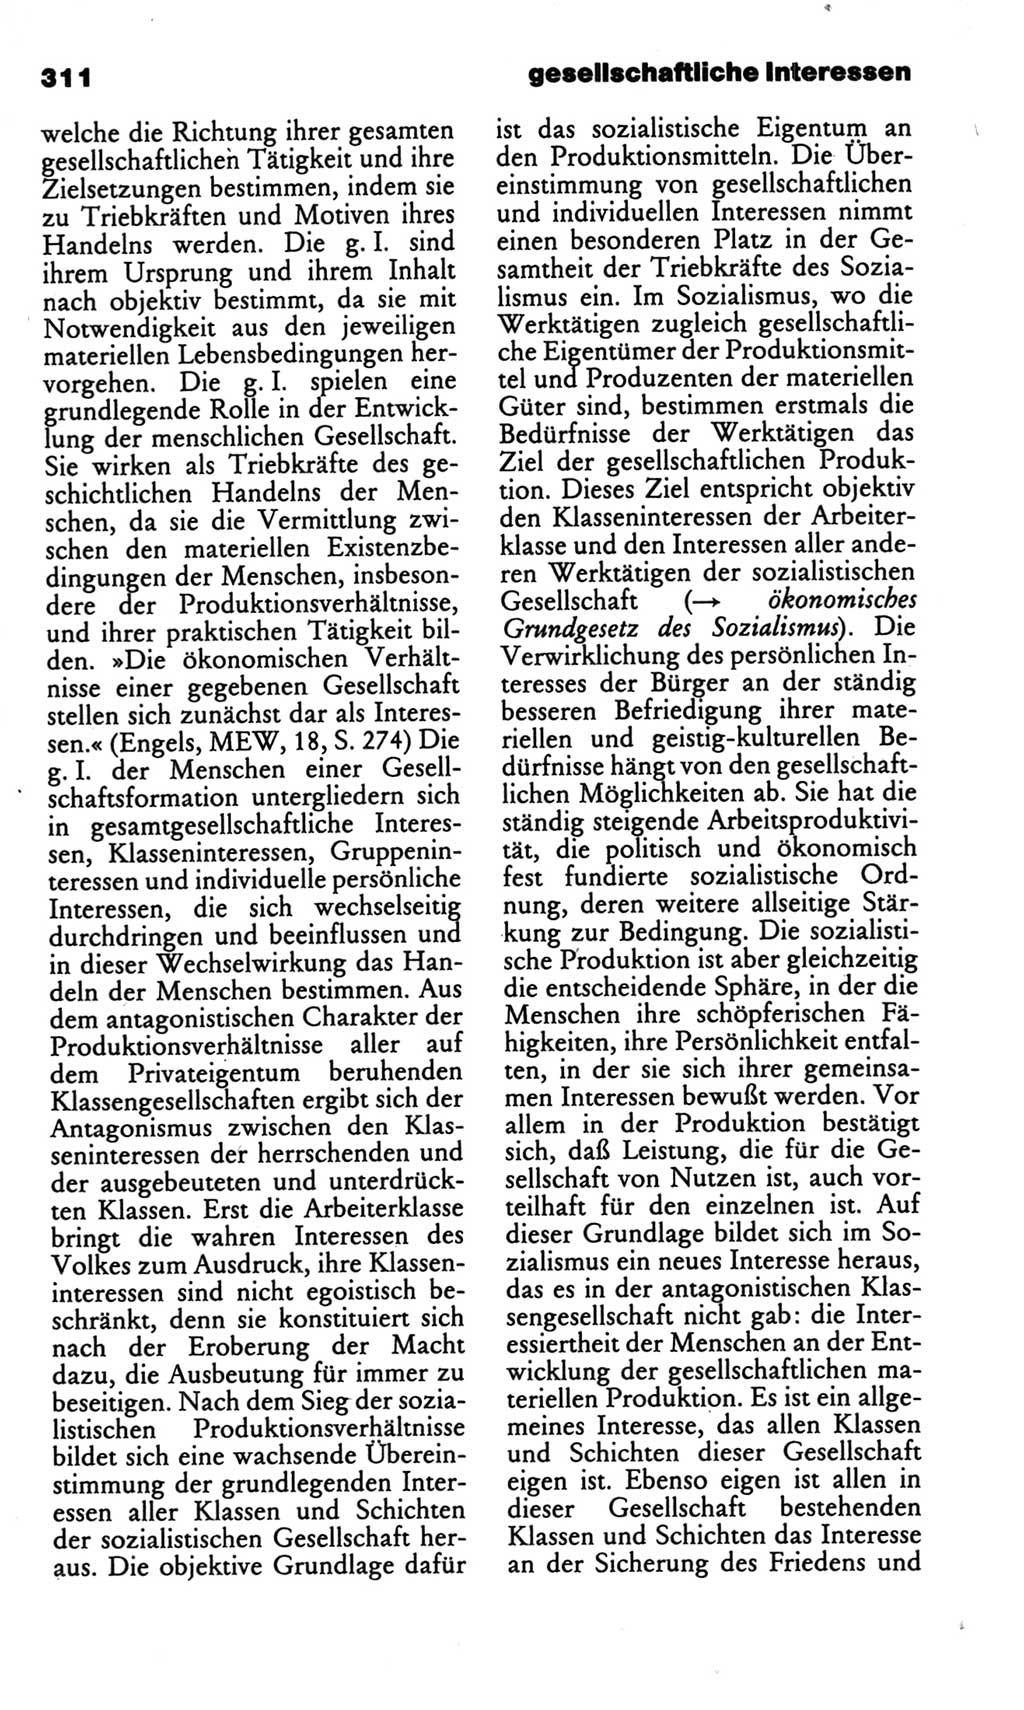 Kleines politisches Wörterbuch [Deutsche Demokratische Republik (DDR)] 1986, Seite 311 (Kl. pol. Wb. DDR 1986, S. 311)